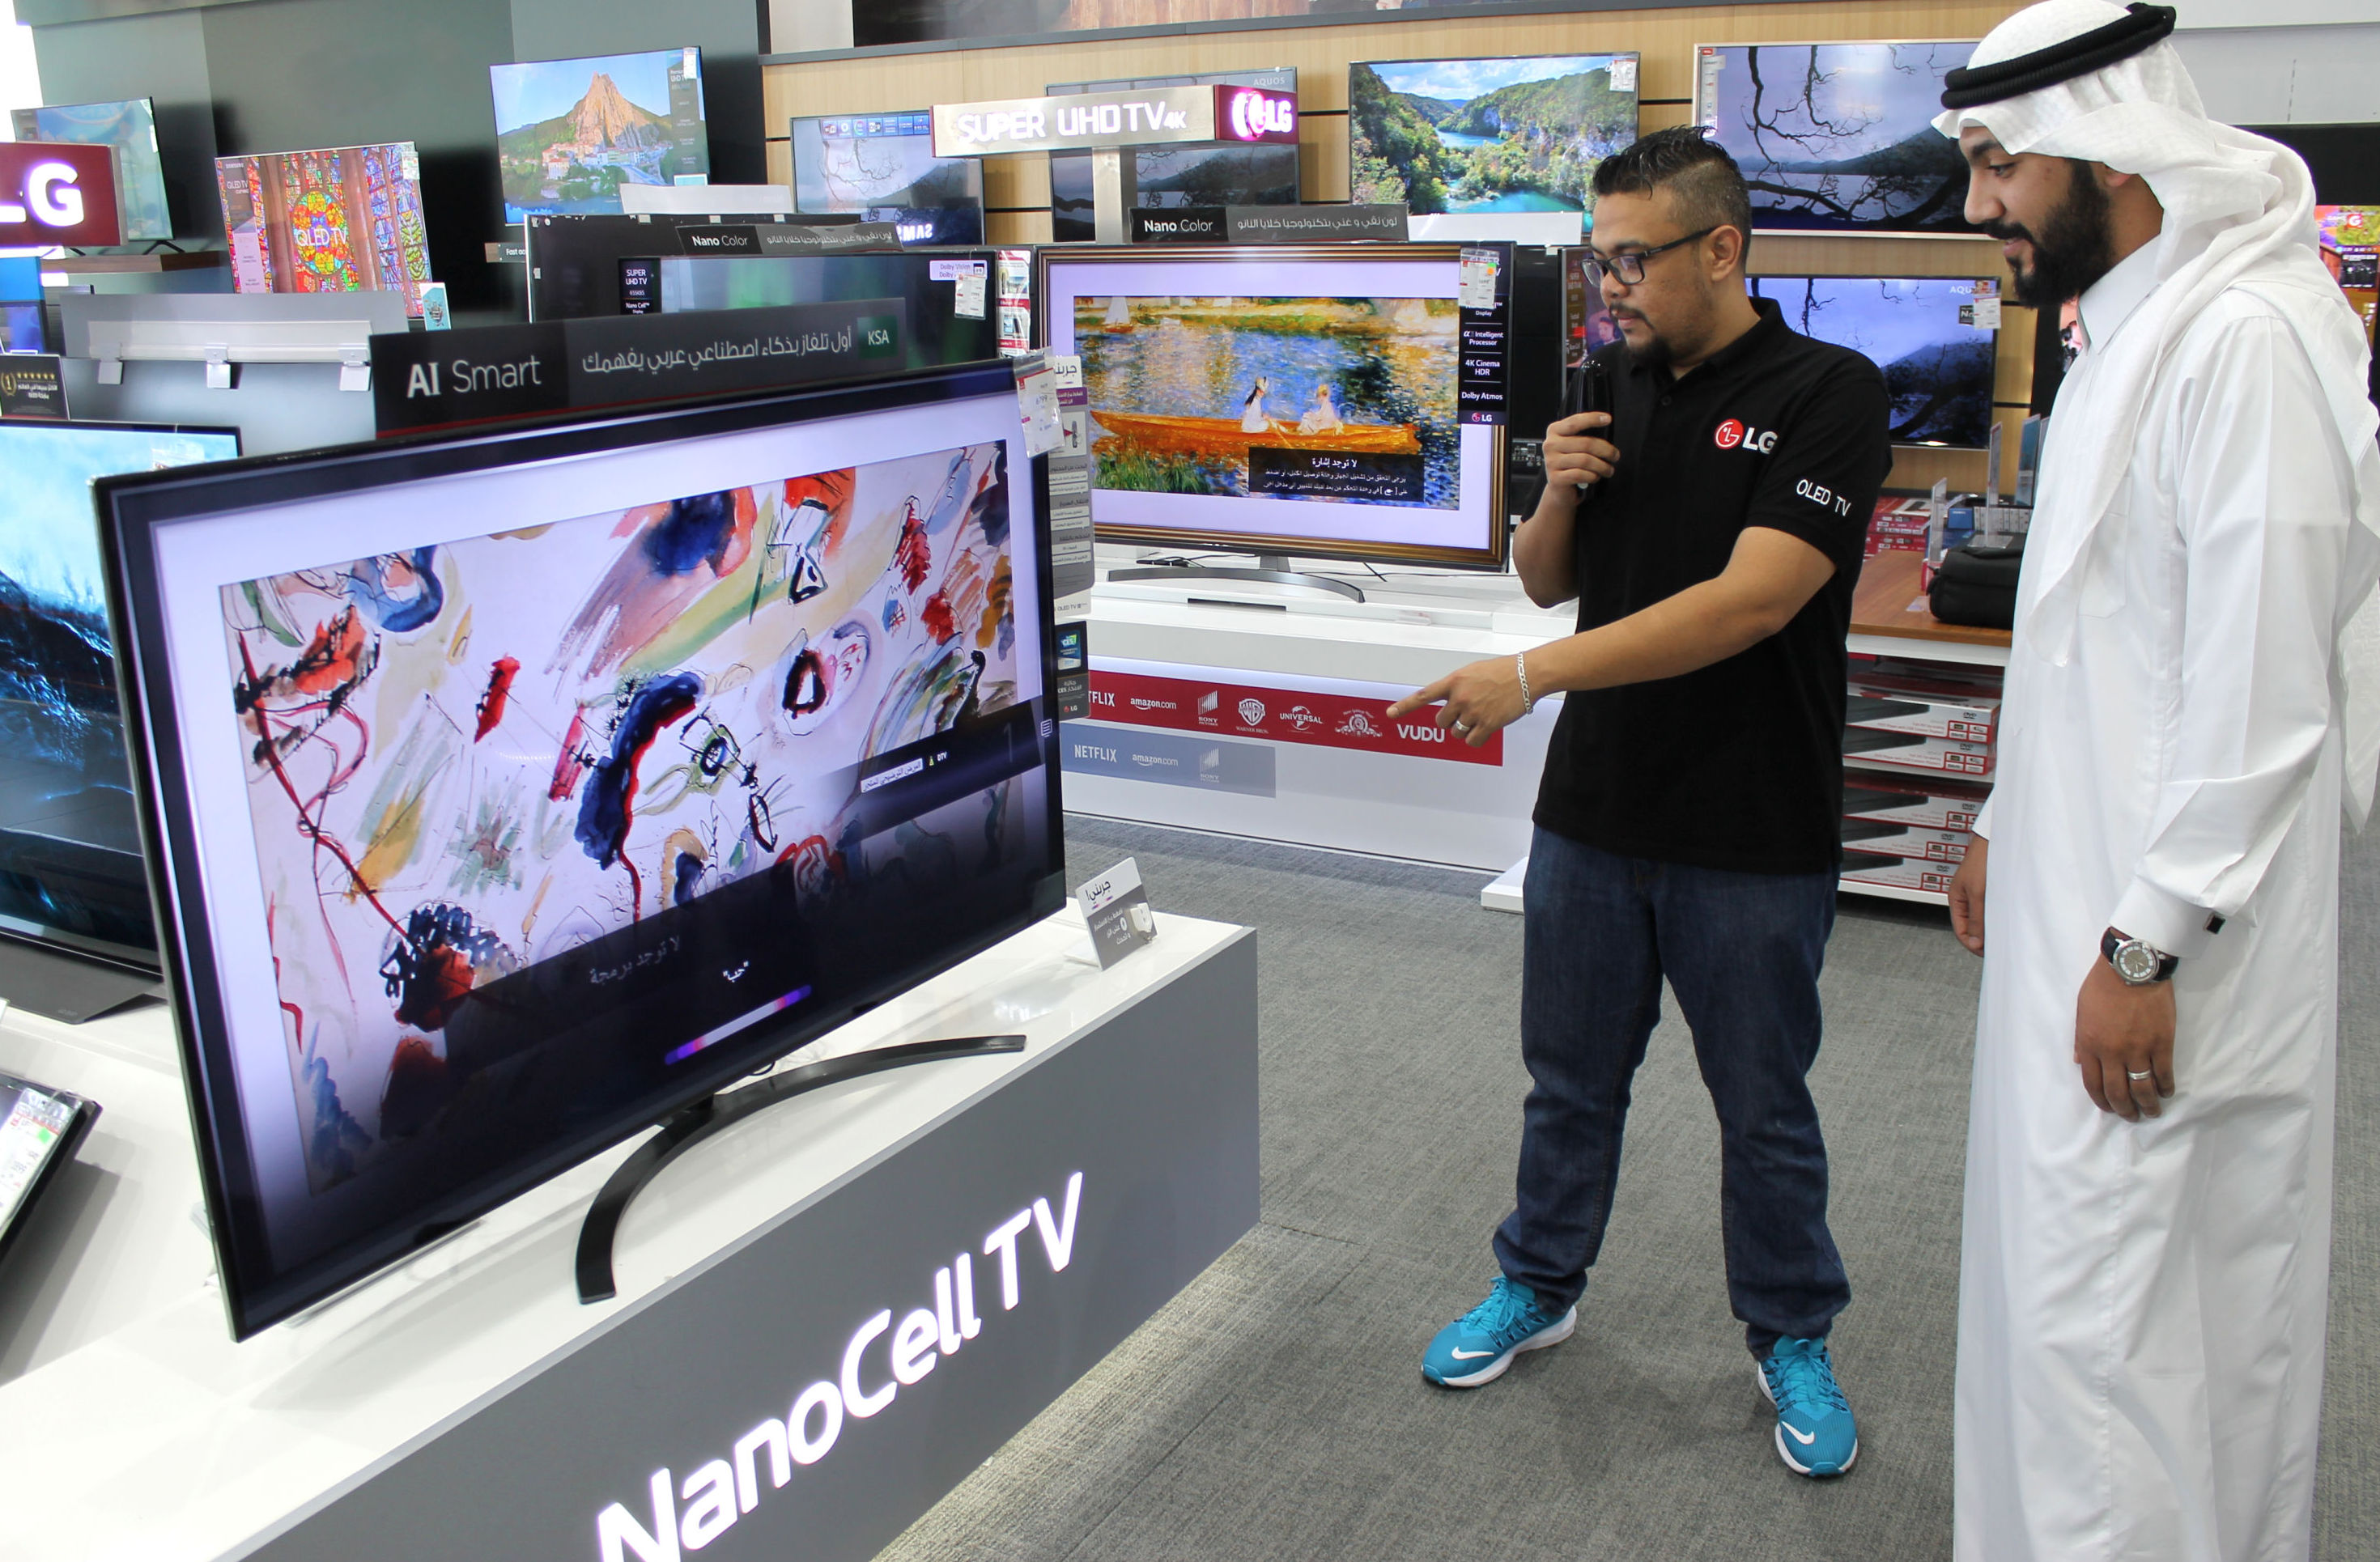 사우디아라비아 제다 소재 전자매장에서 고객이 아랍어 음성 명령으로 LG 인공지능 TV의 인공지능 기능을 체험하고 있다. 